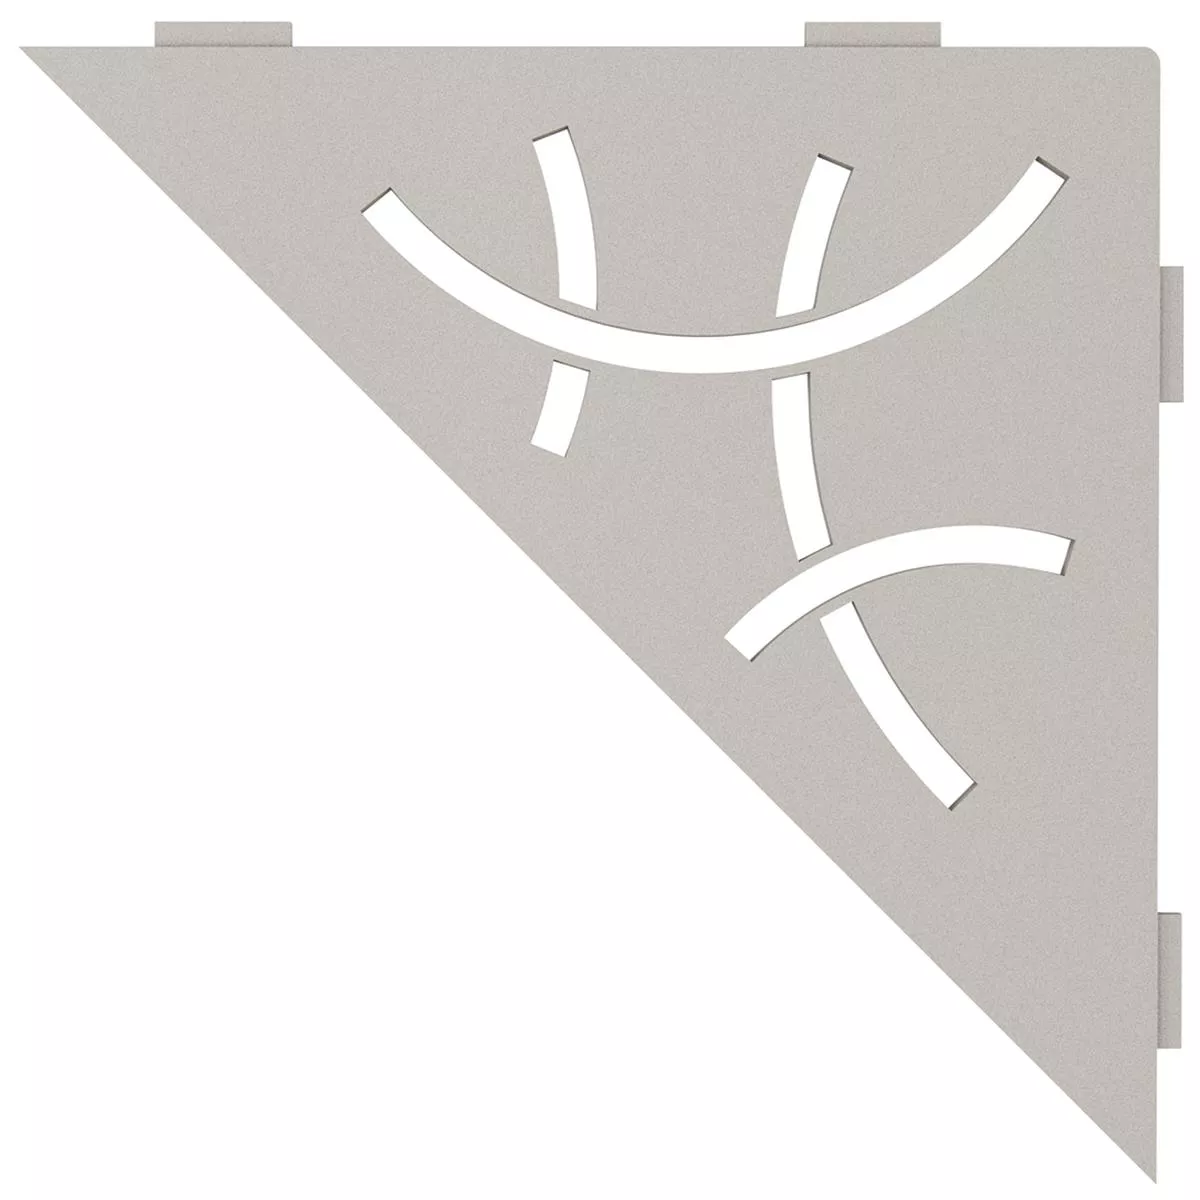 Schlüter étagère murale triangle 21x21cm courbe beige gris